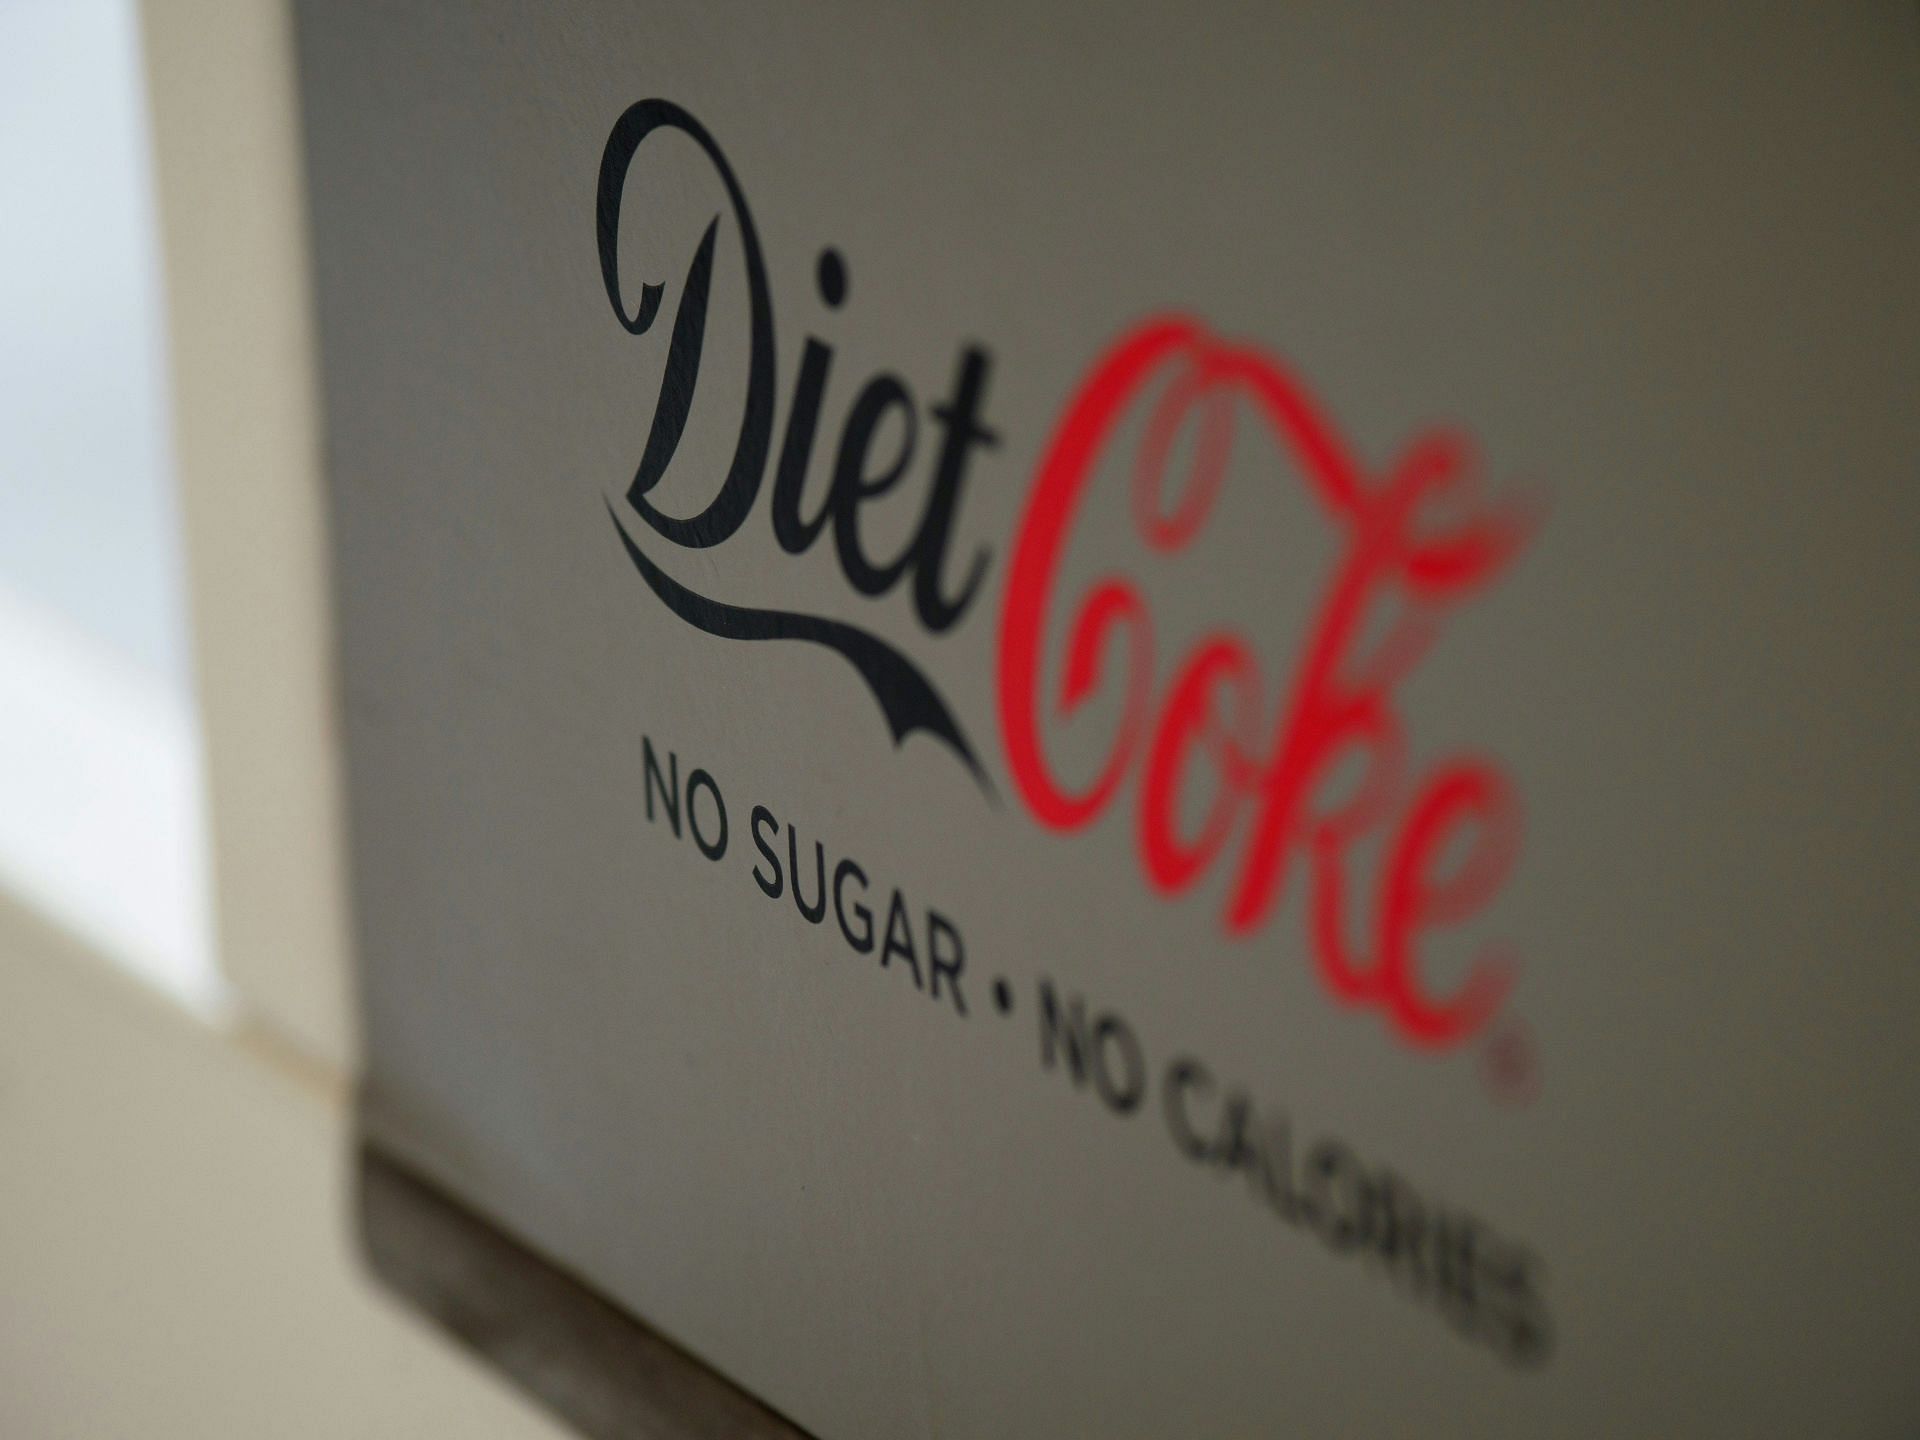 Zero-calorie Coke (Image by Brett Jordan/Unsplash)